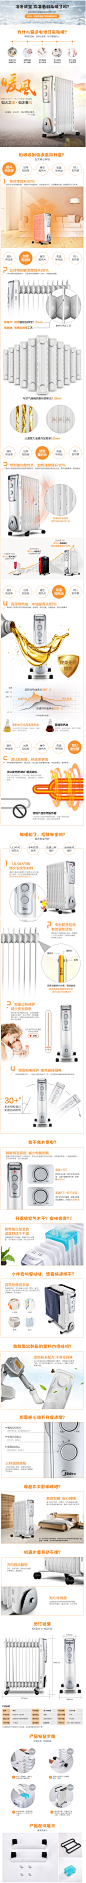 美的电暖器气取暖器家用节能电油汀新型大功率暖气片NY2011-16J1W-tmall